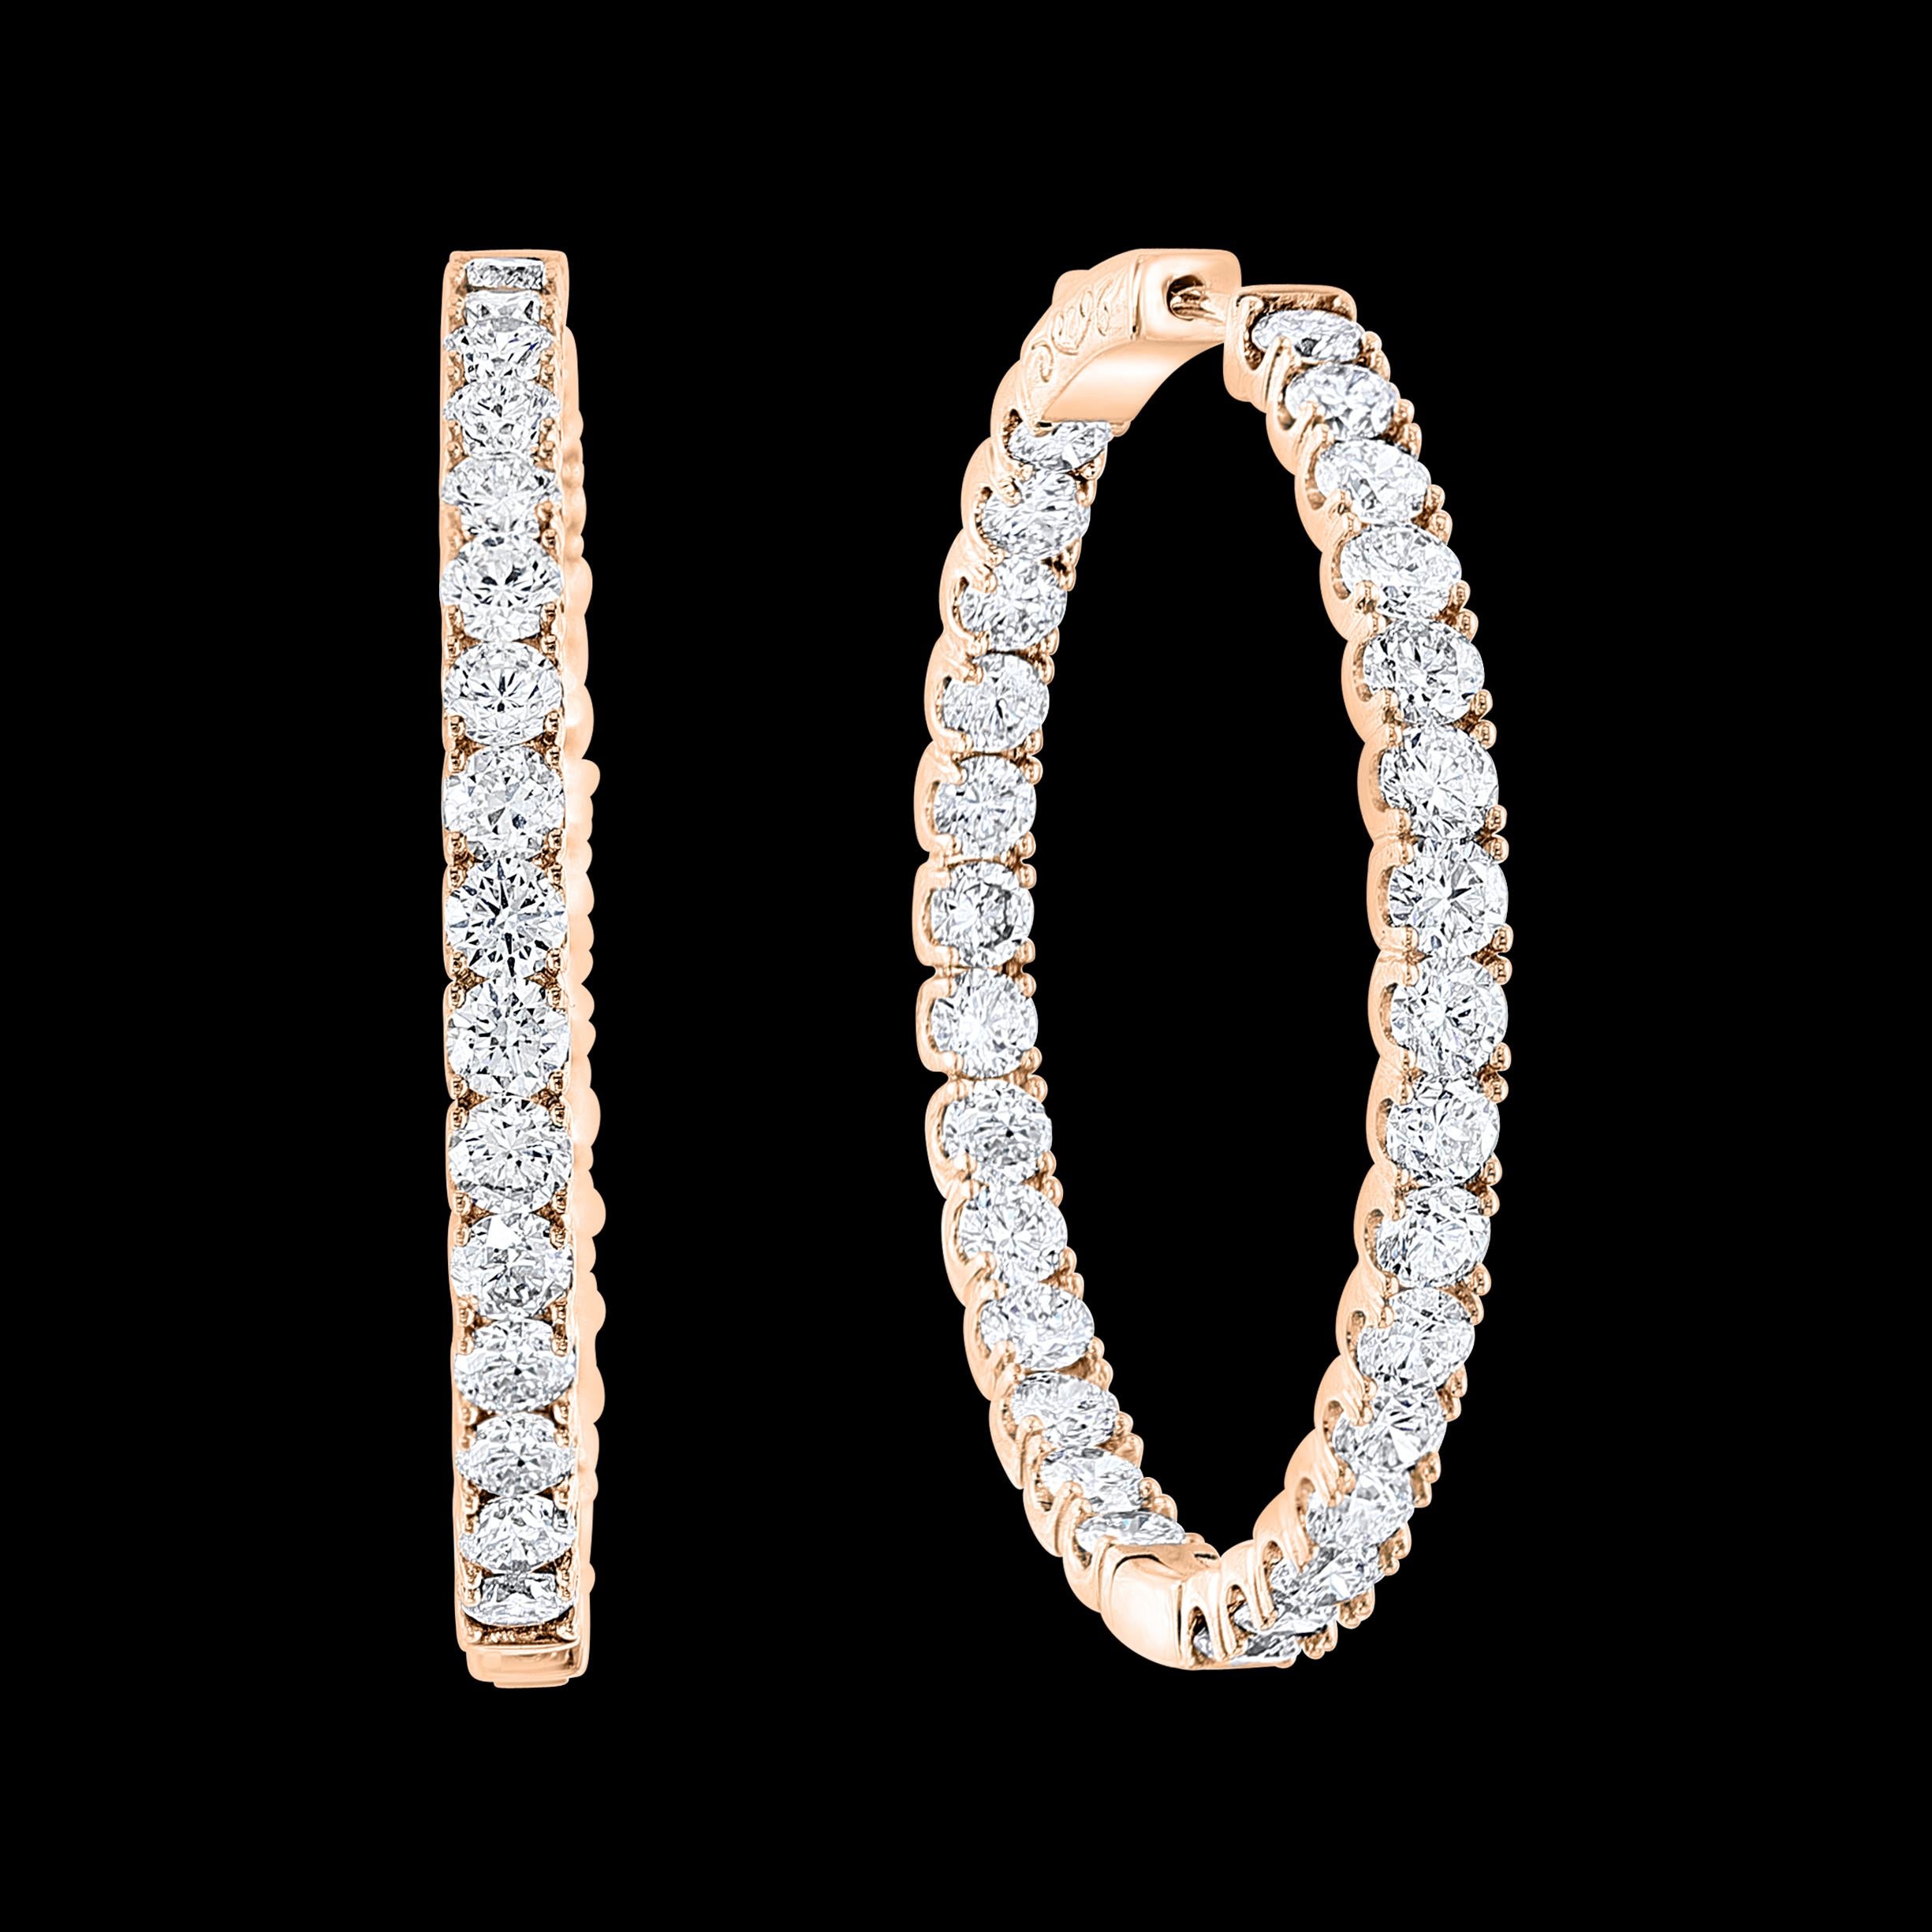 7.92 Karat Diamant Inside Out Hoop Gala Cocktail-Ohrringe In 14 Karat Rose Gold
Ein fabelhaftes Paar Ohrringe mit einer enormen Menge an Aussehen und Funkeln!
Dieses exquisite Paar Ohrringe verfügt über 66 runde Diamanten im Brillantschliff, die von